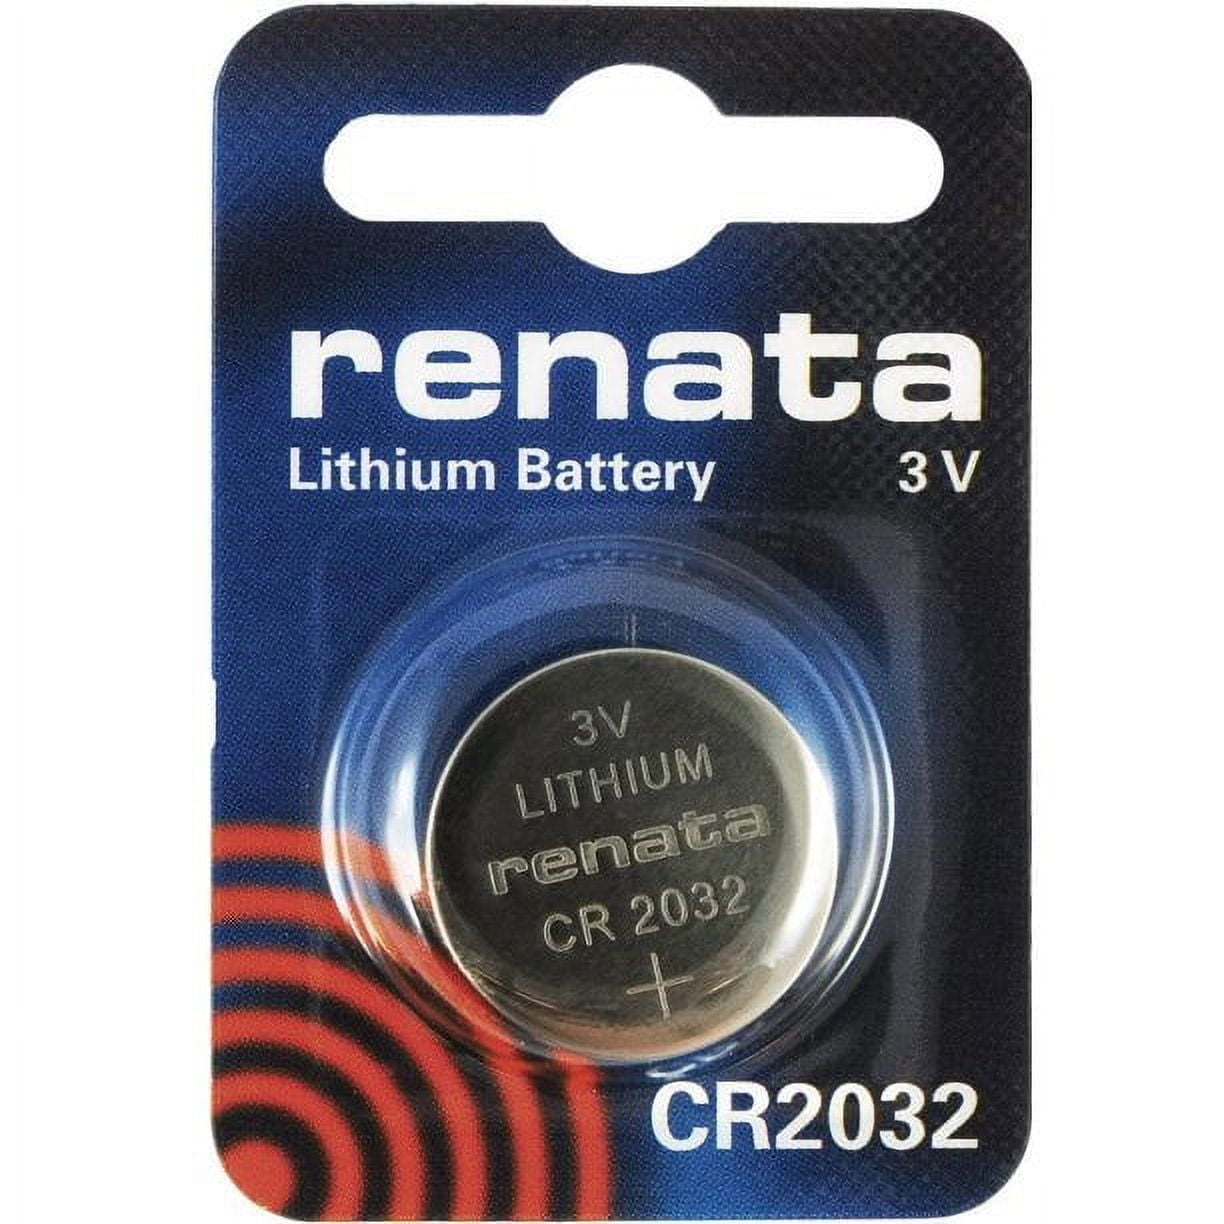 Renata CR2032 3V Lithium Coin Battery on Mini Blister Pack - 5 Pack